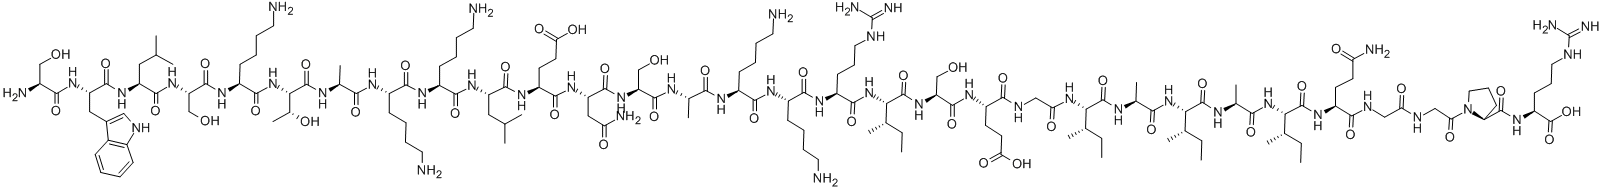 125667-96-1 抗菌肽P1